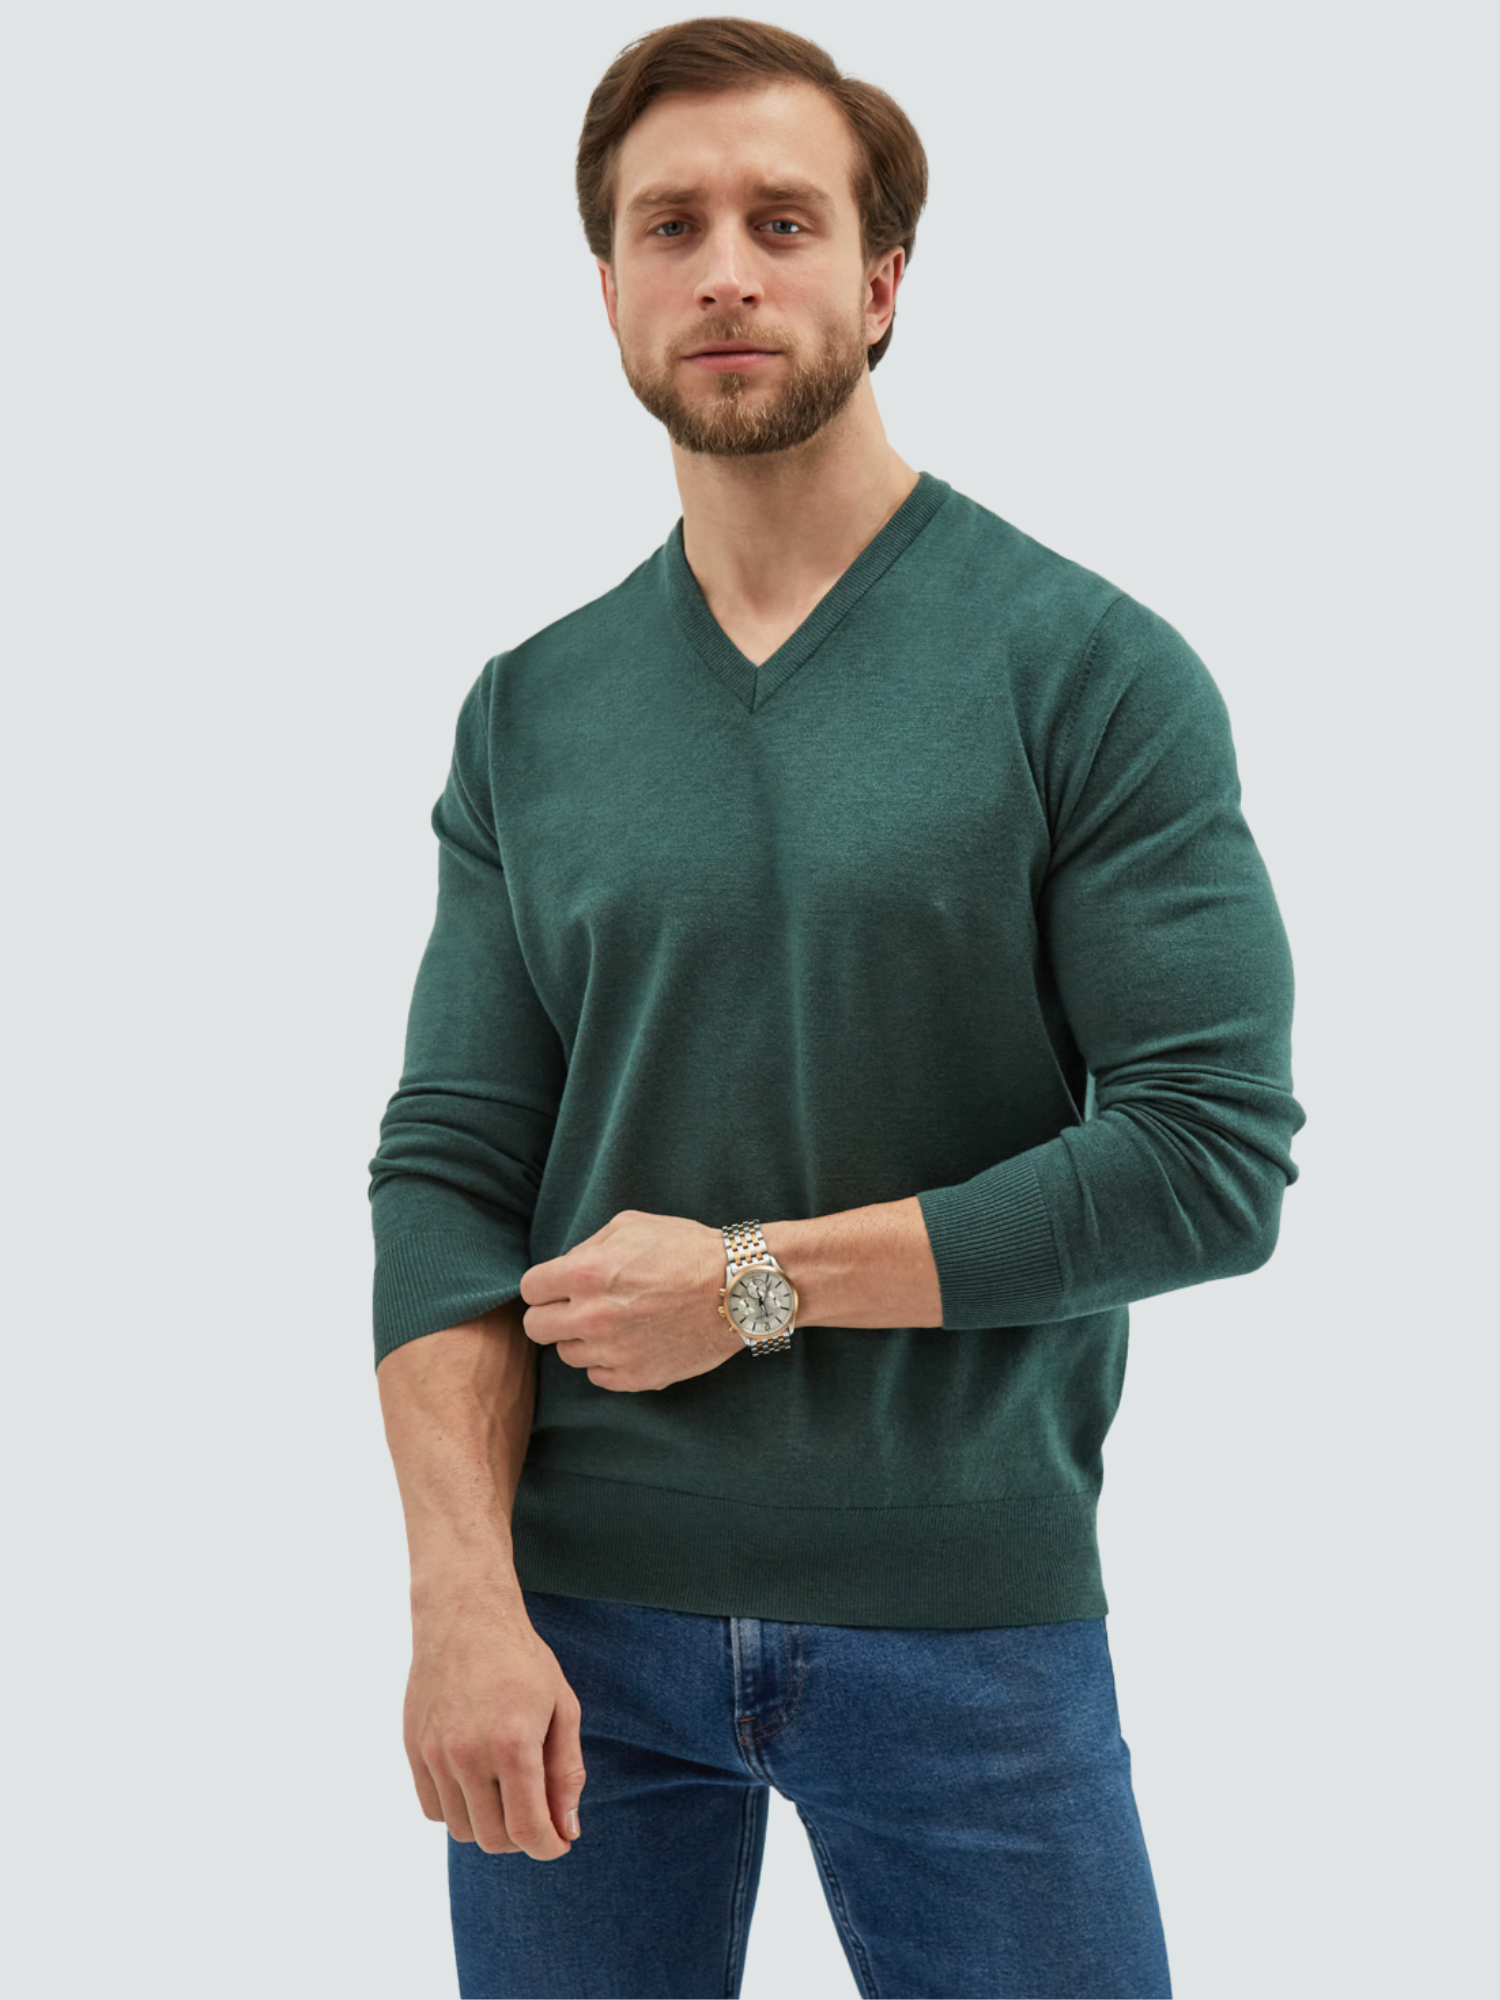 Пуловер мужской MANAFOFF 8106 зеленый XL